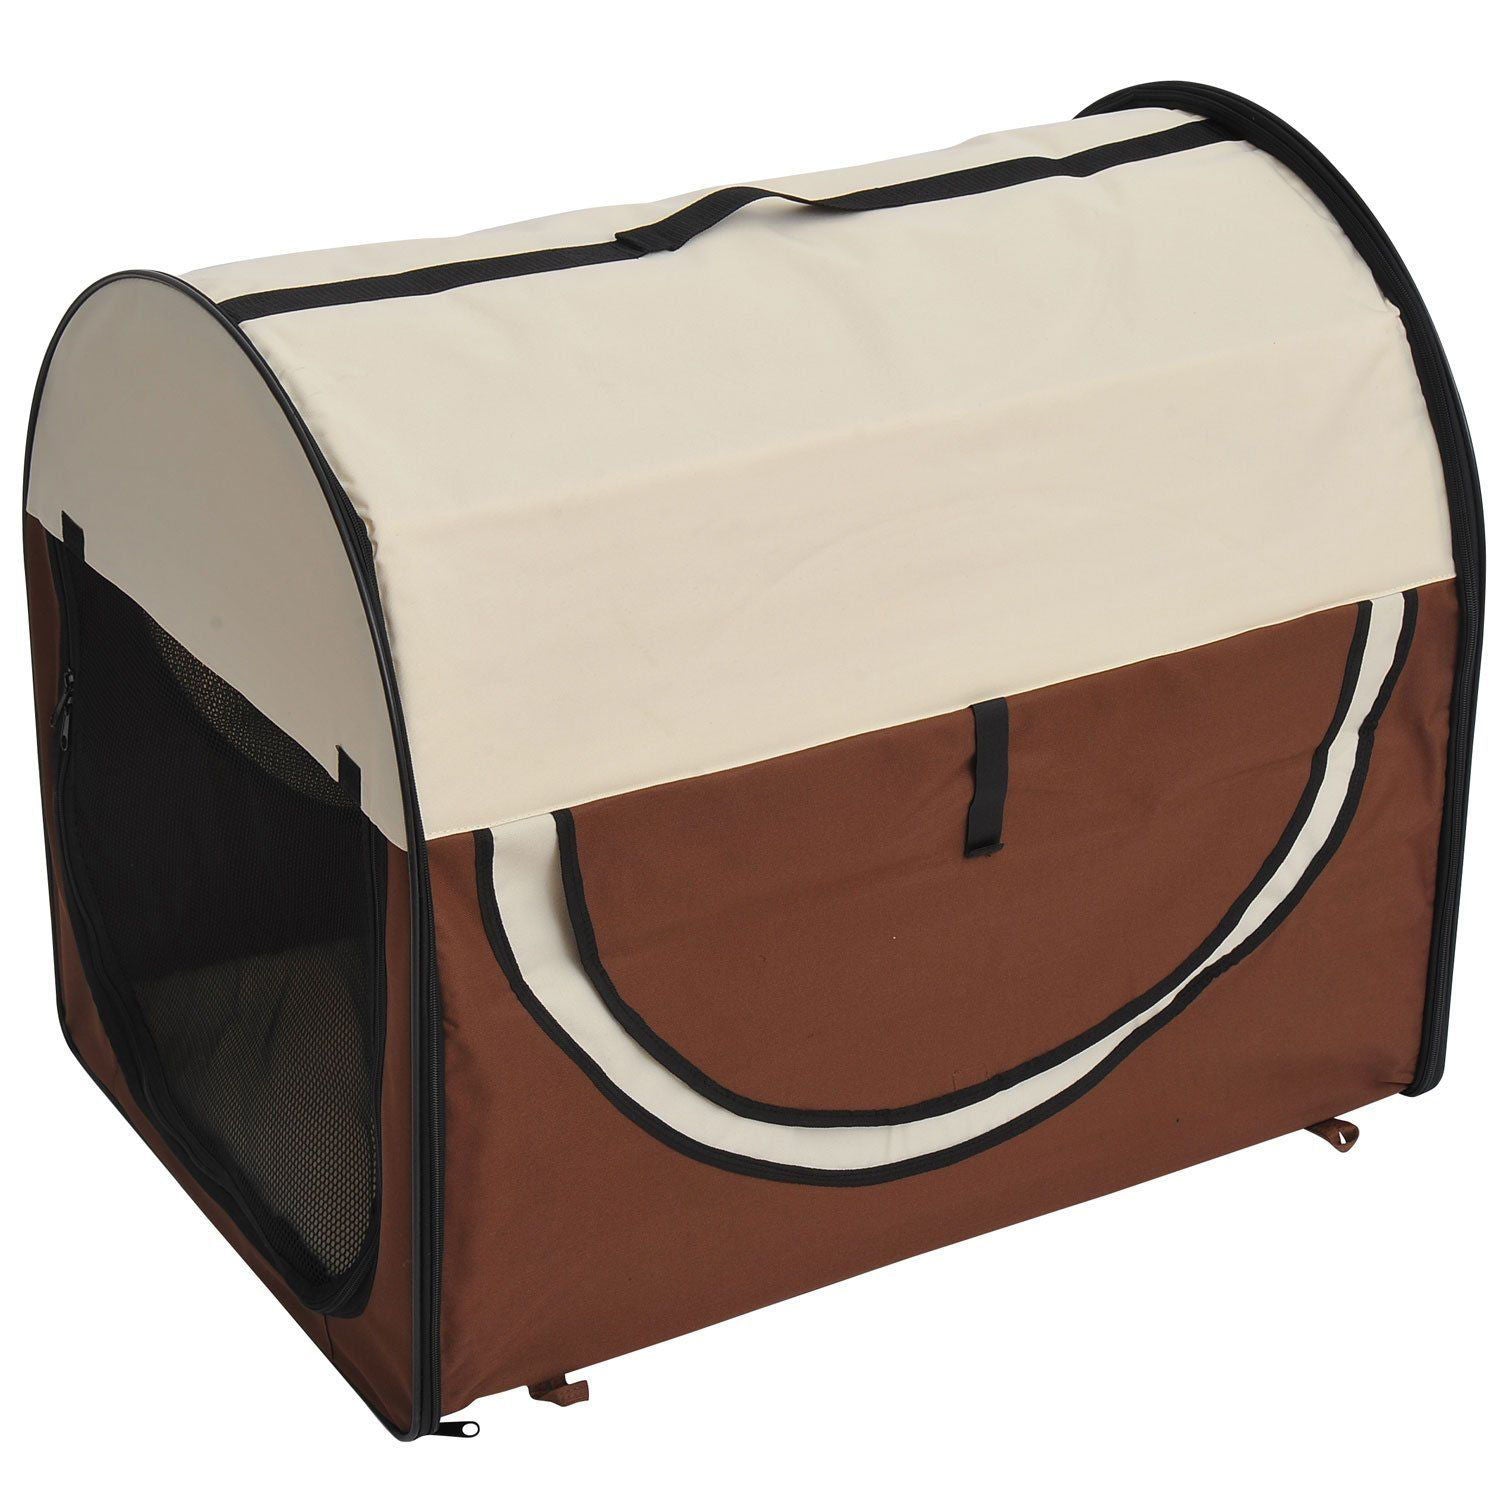 Boîte de transport pliable pour chiens Nancy's Welchtown - Marron - Tissu, PVC, Acier - 31,89 cm x 22,05 cm x 25,98 cm